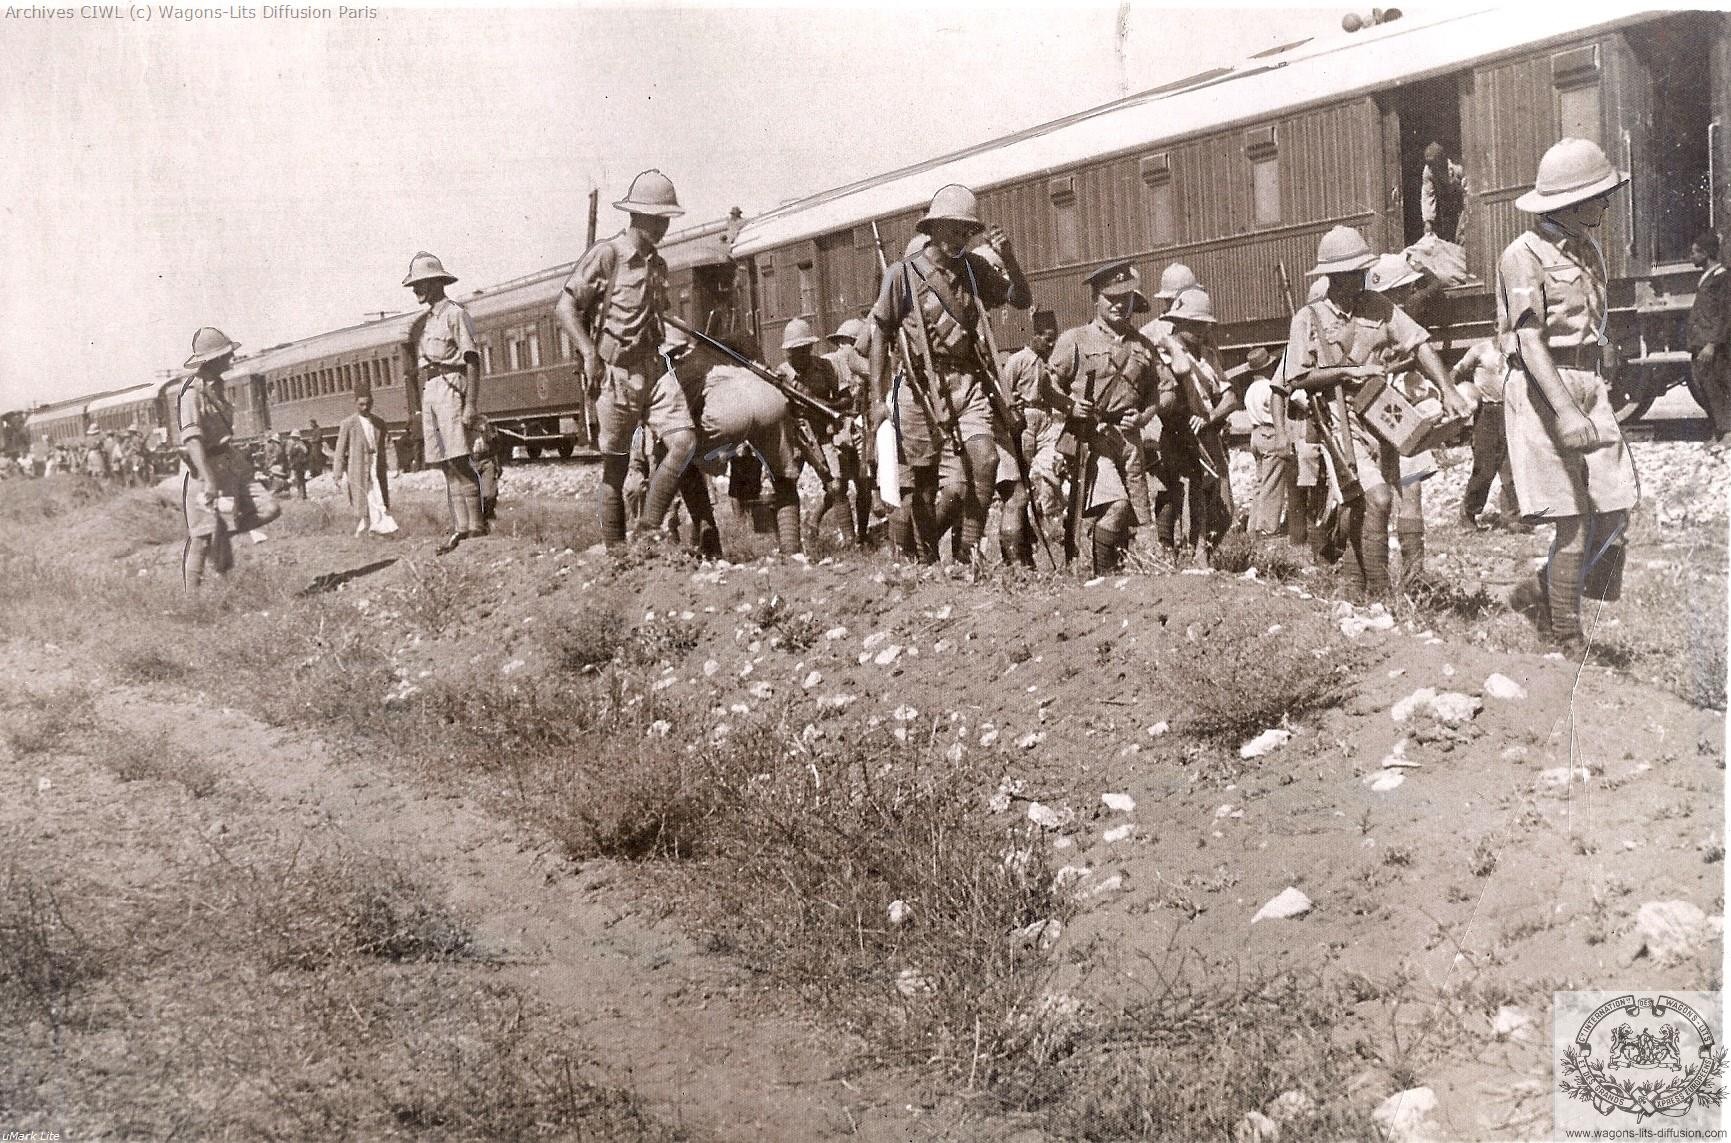 Wl palestine railways lydda junction in 1936 riots in palestine